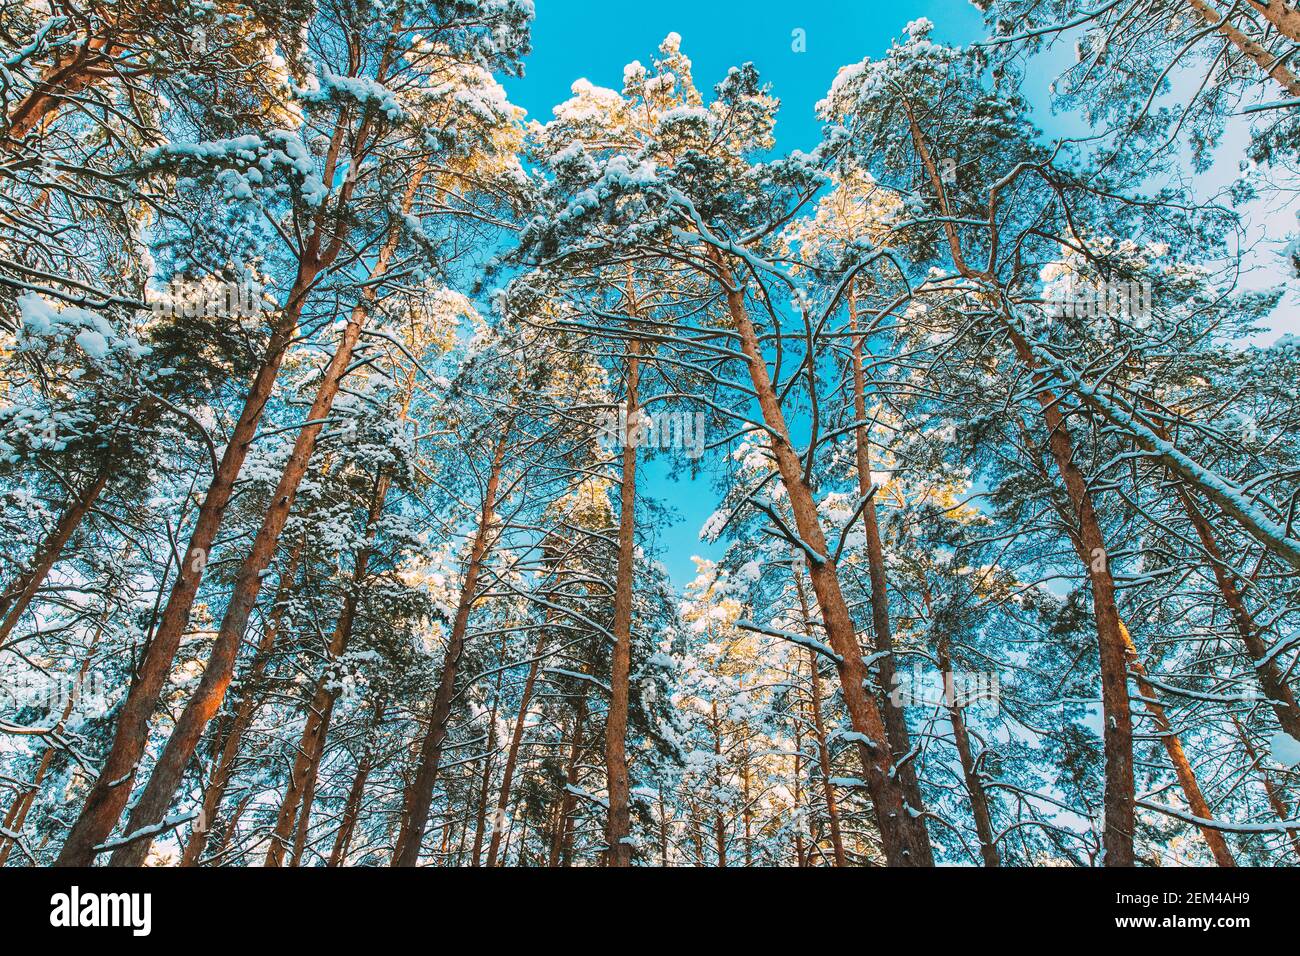 Vue sur la forêt de pins enneigée. Arbres déglacés Bois de Trunks gelés en hiver Forêt conifères enneigées. Beaux bois dans la forêt Banque D'Images